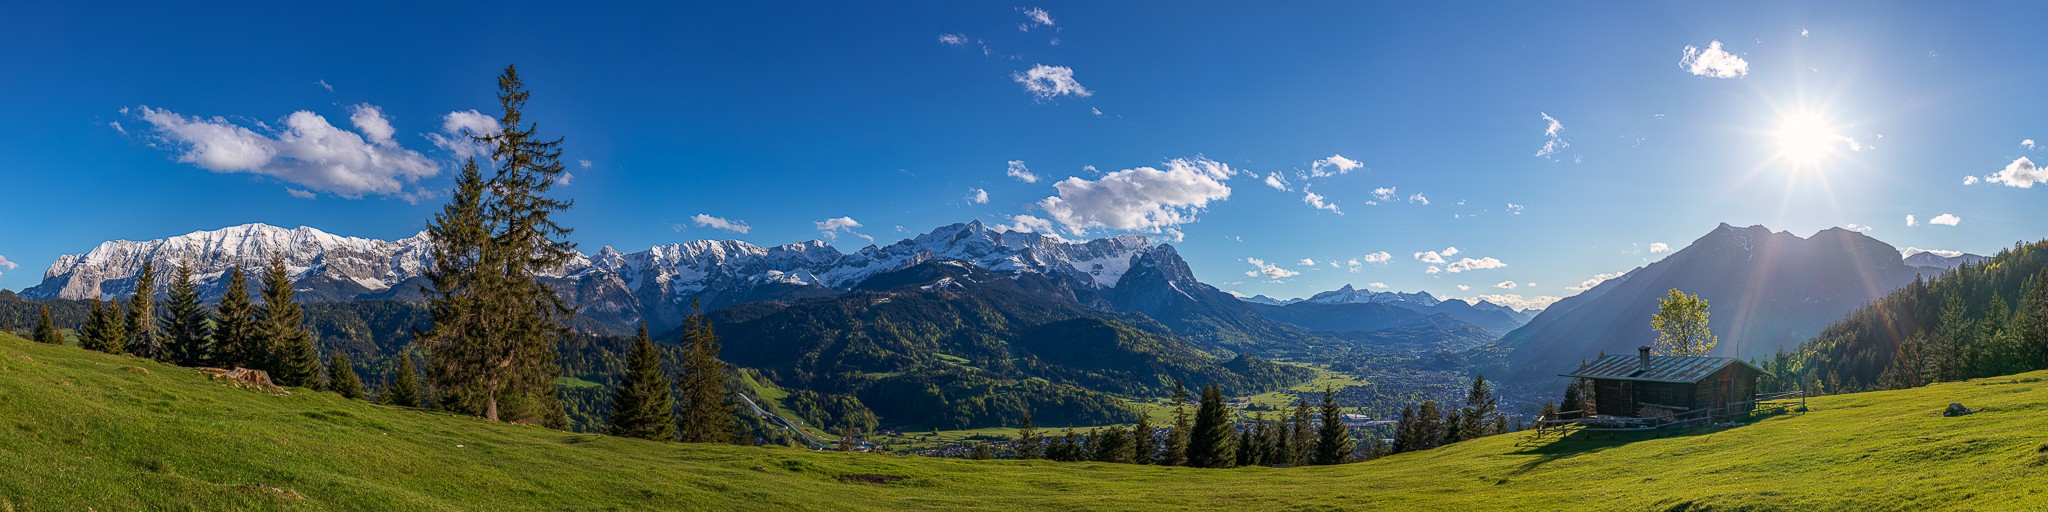 Bergpanorama mit Almhütte über Garmisch-Partenkirchen. Blick auf das Wettersteingebirge mit Alpspitze und Zugspitze und auf der rechten Seite der Kramer.